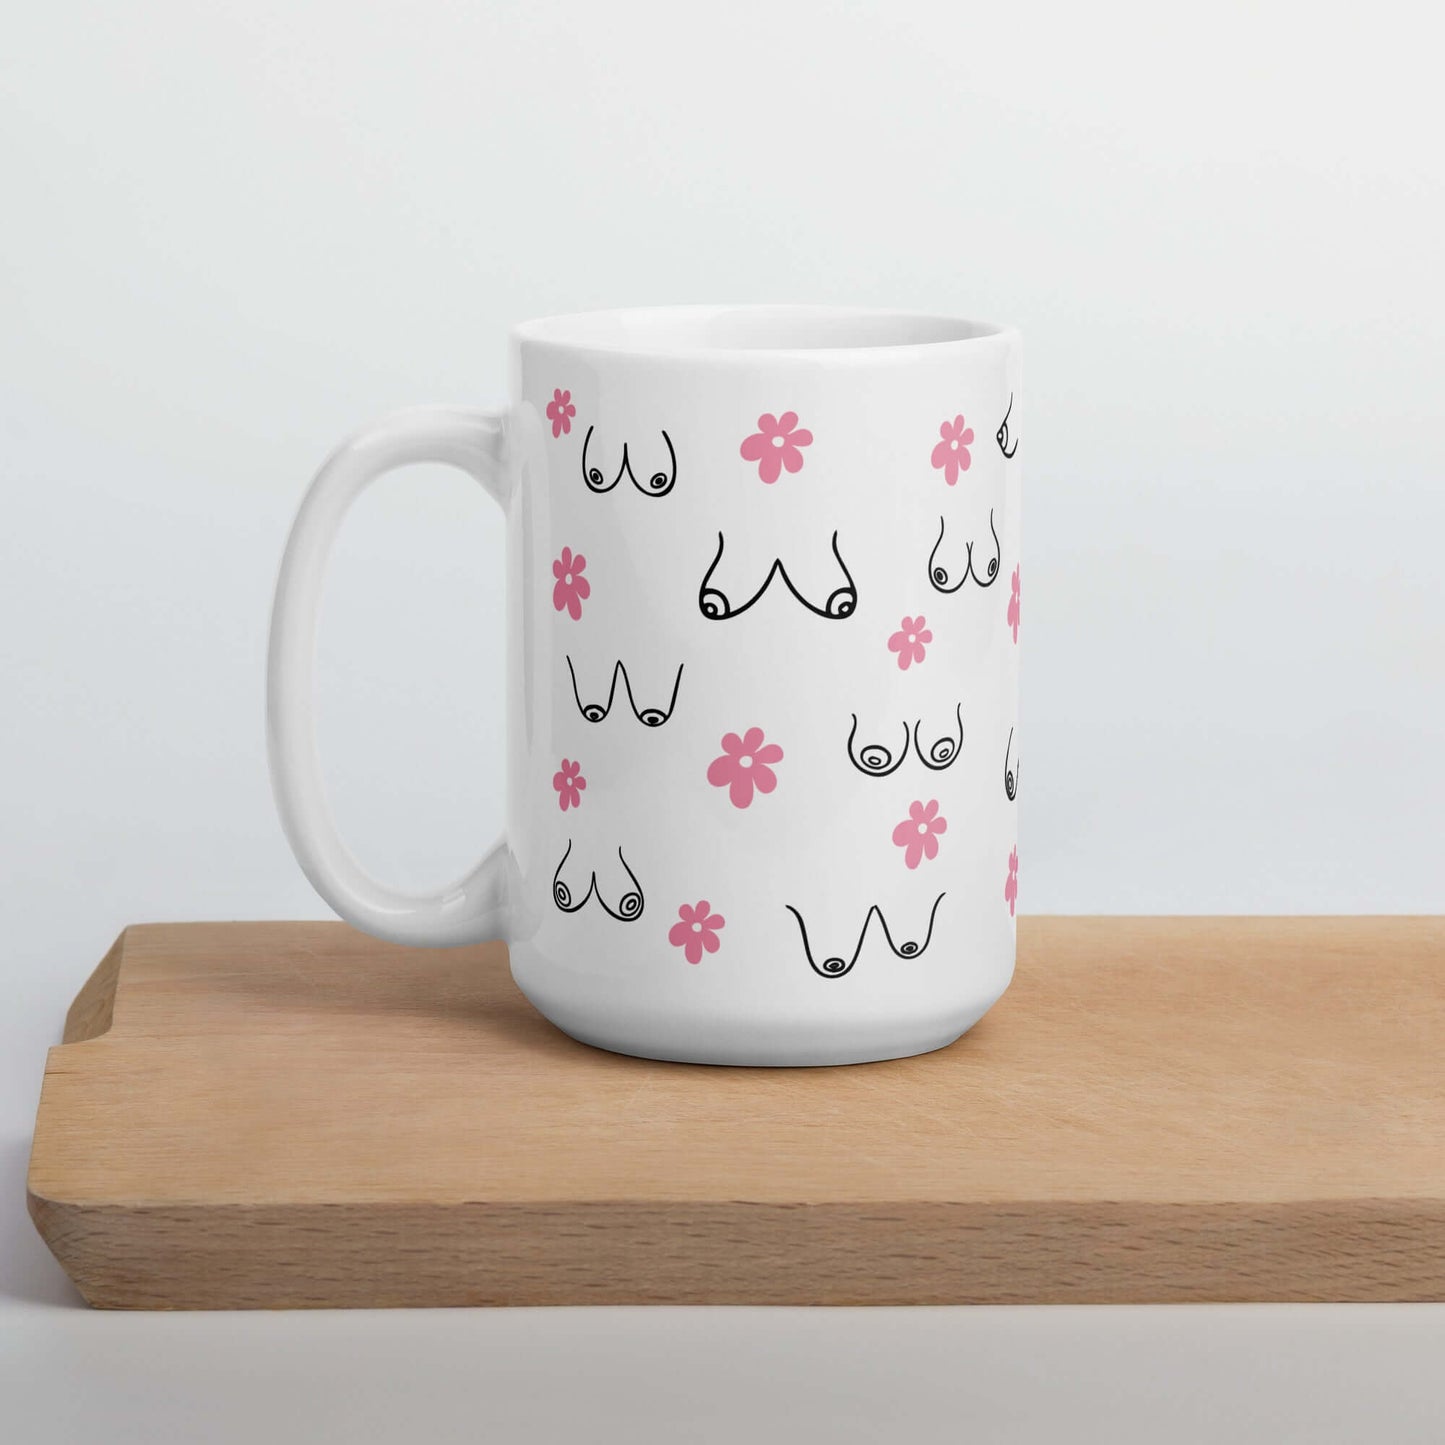 Boobs everywhere ceramic mug